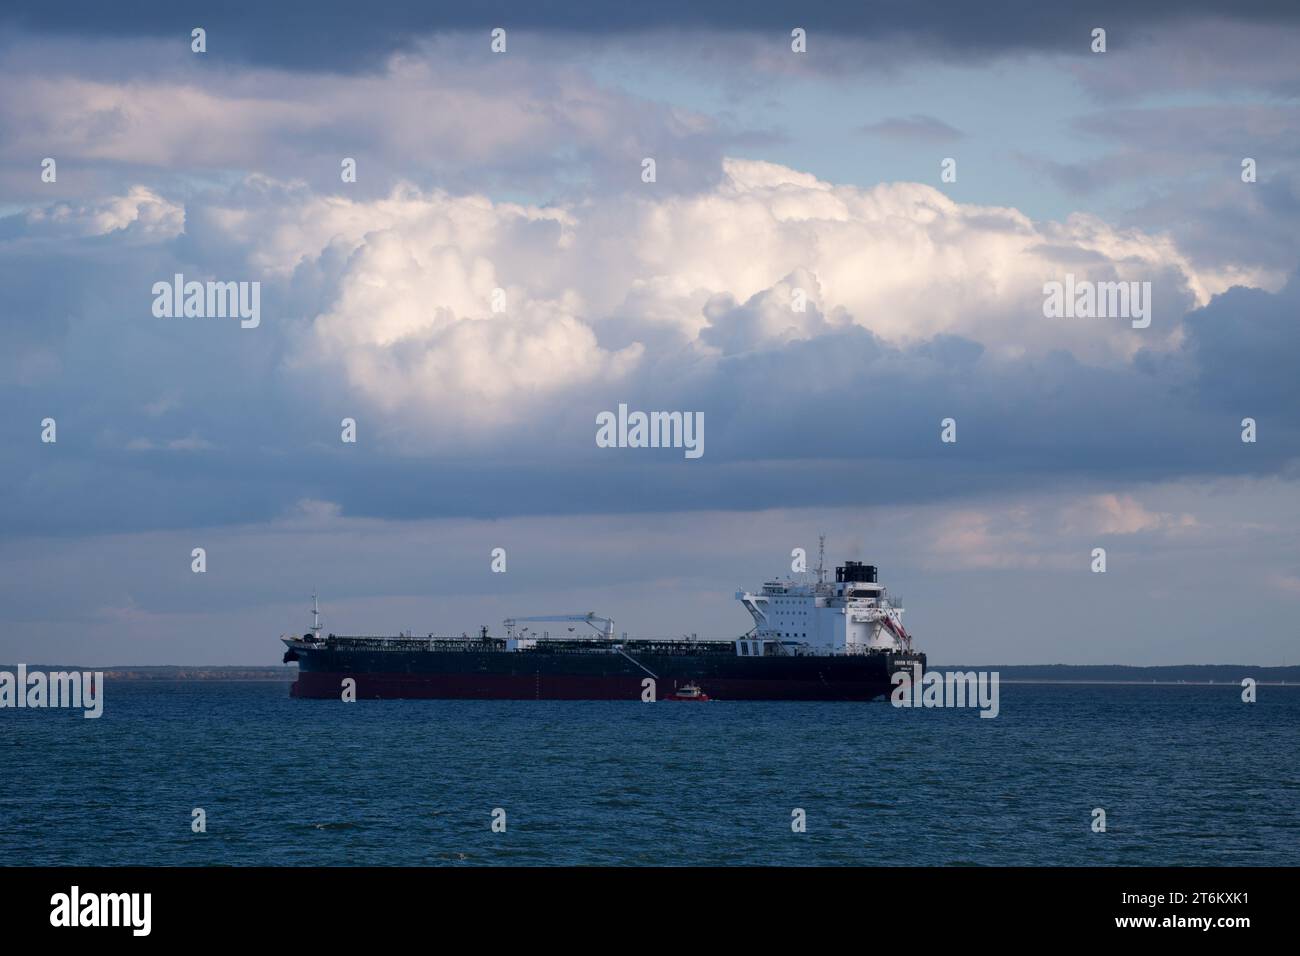 Kmarin Regard tanker in Gdansk, Poland © Wojciech Strozyk / Alamy Stock Photo *** Local Caption *** Stock Photo